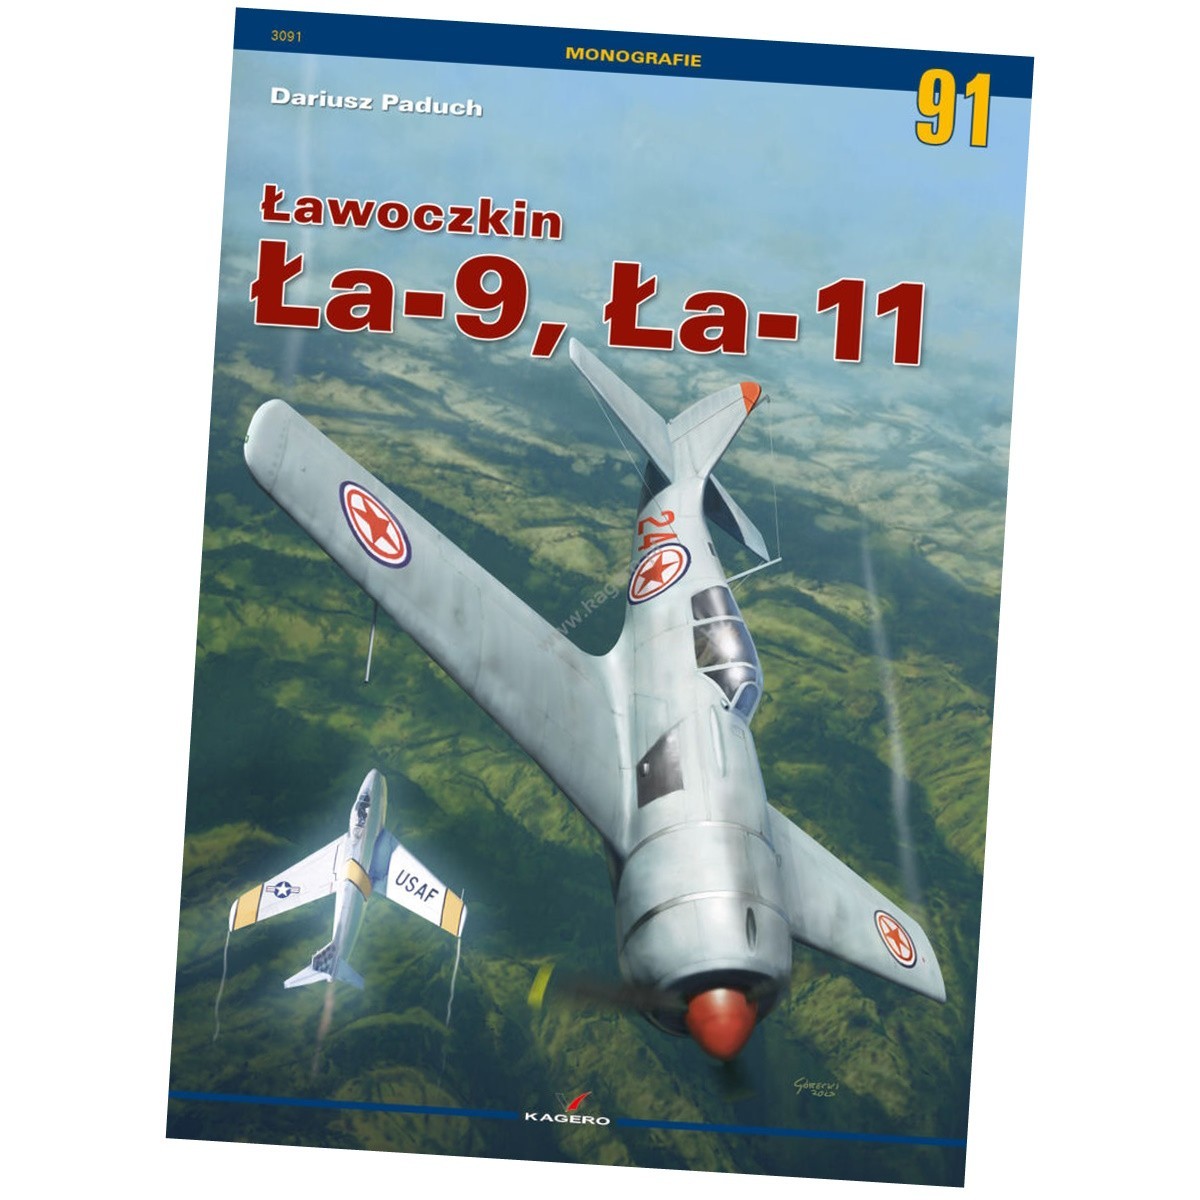 Kagero Lavochkin La-9 & La-11 New Publication